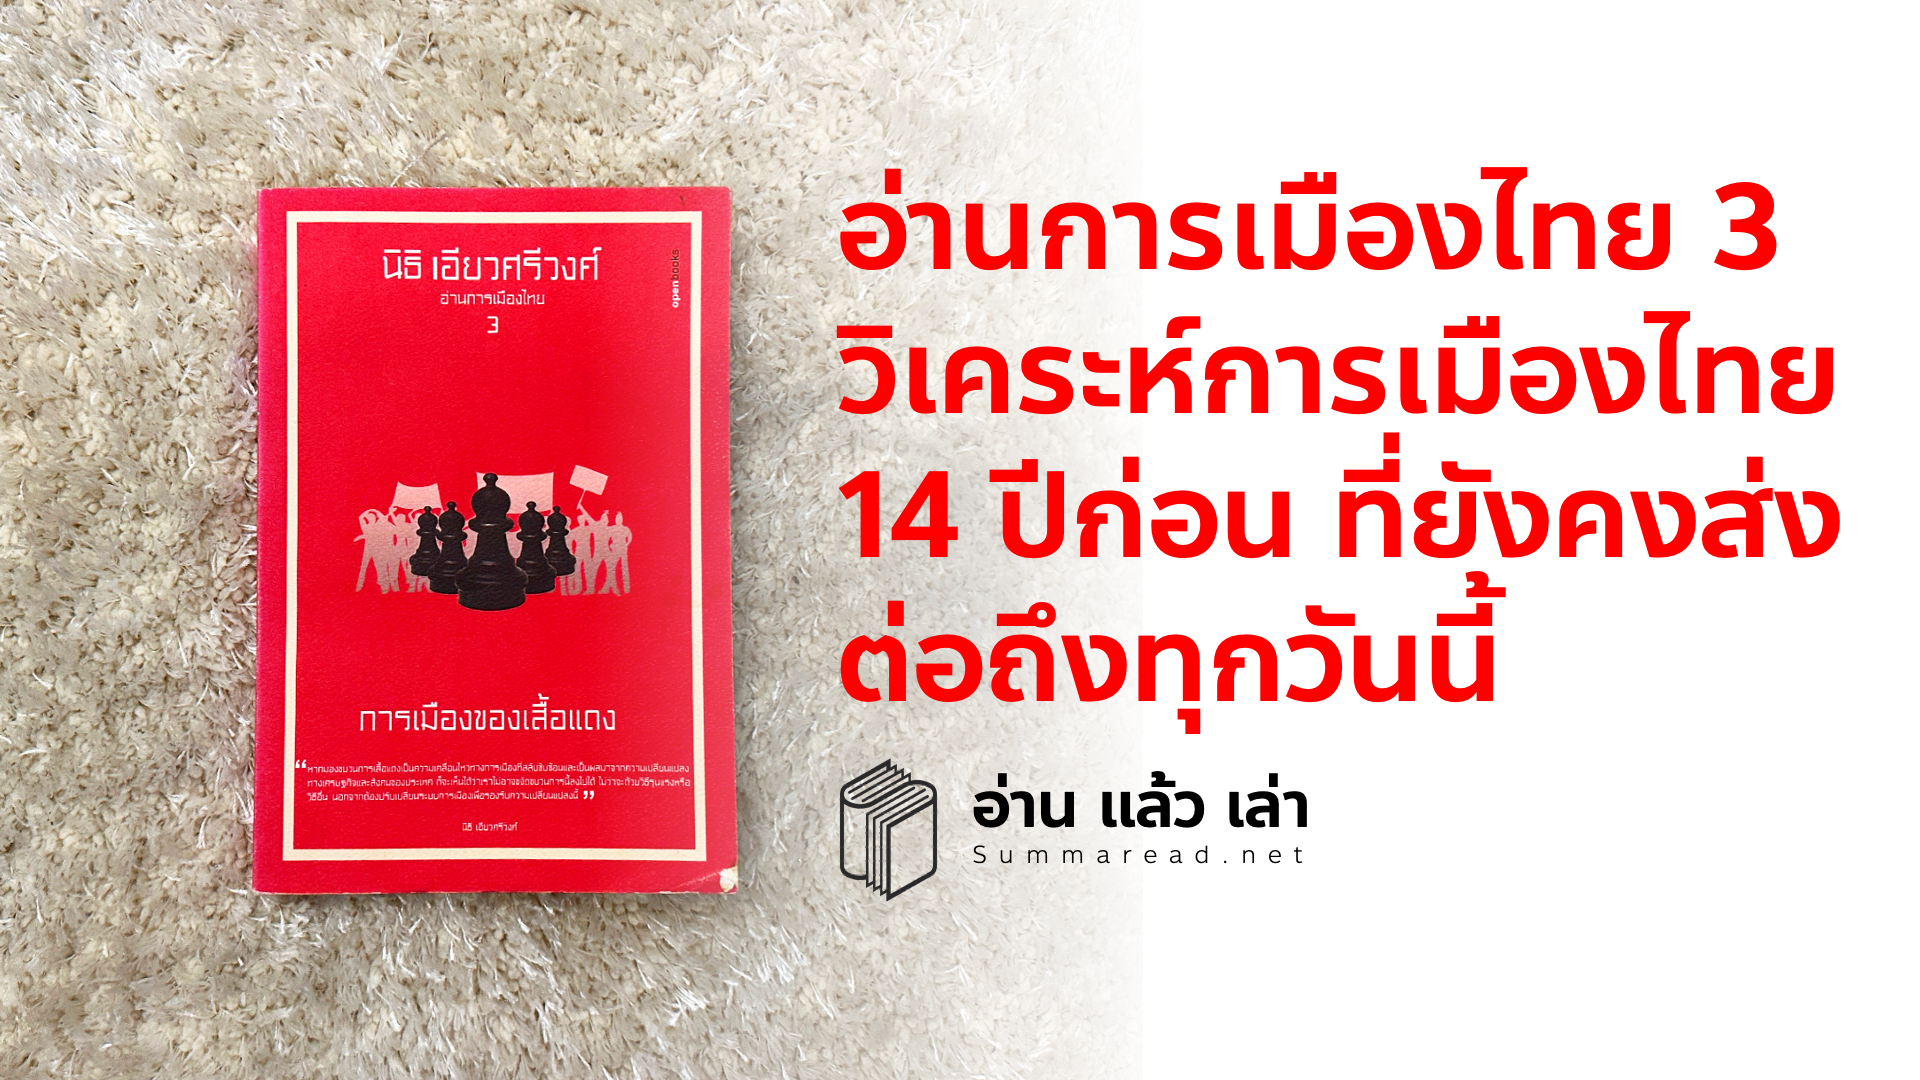 สรุปหนังสือ อ่านการเมืองไทย 3 การเมืองของเสื้อแดง นิธิ เอียวศรีวงศ์ เขียน เรื่องราวการเมืองไทยที่ 14 ปีผ่านไปยังคงย่ำอยู่กับที่